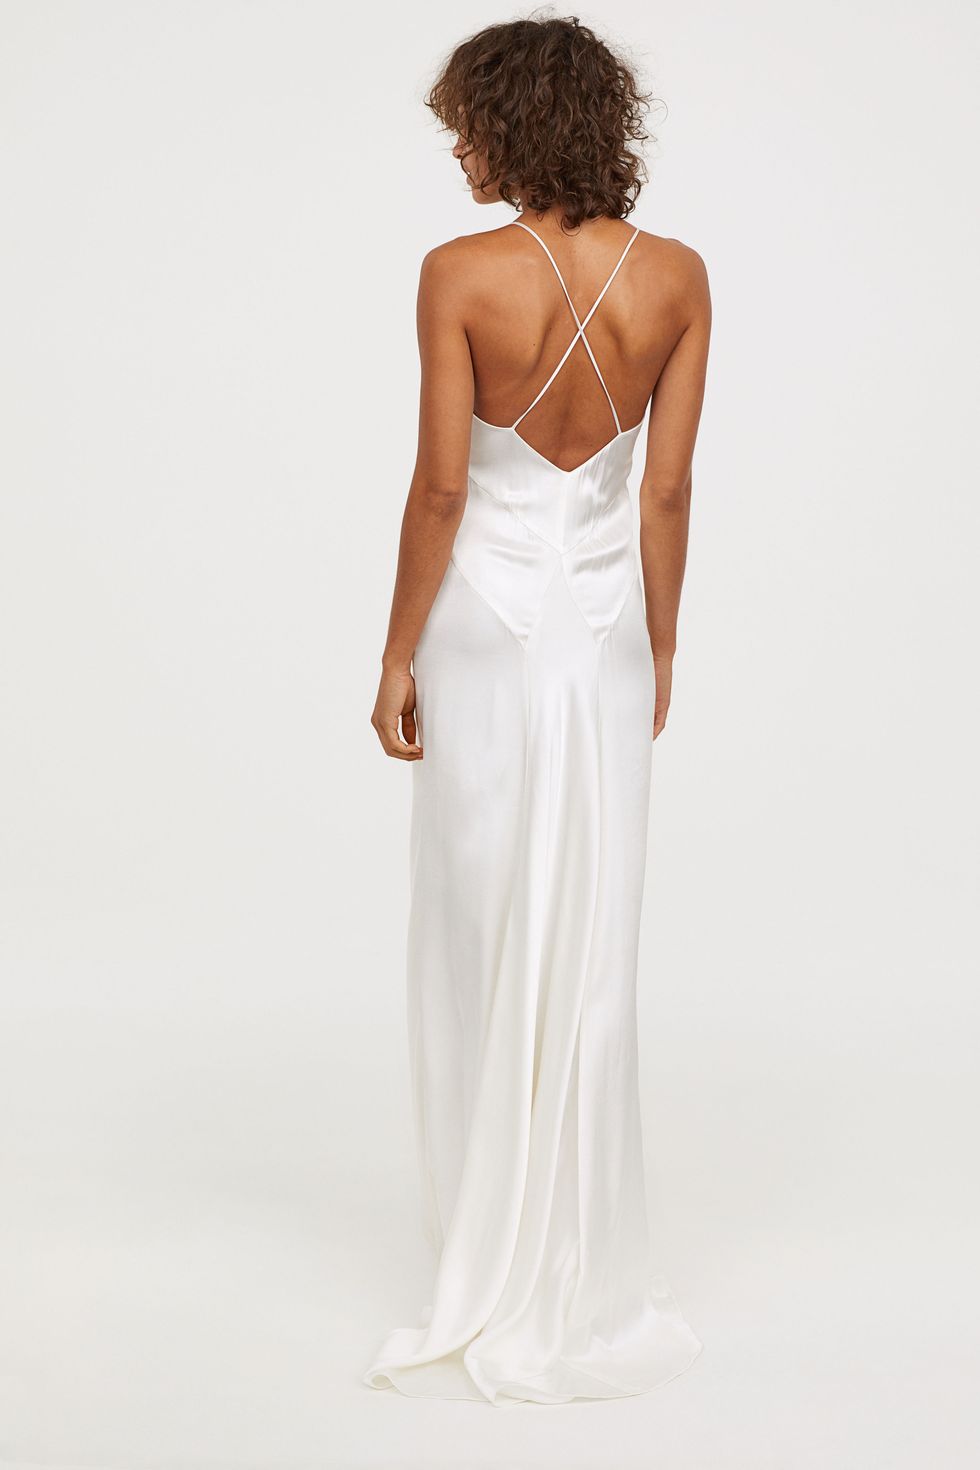 H&M vende un nuevo vestido de novia muy barato de estilo lencero